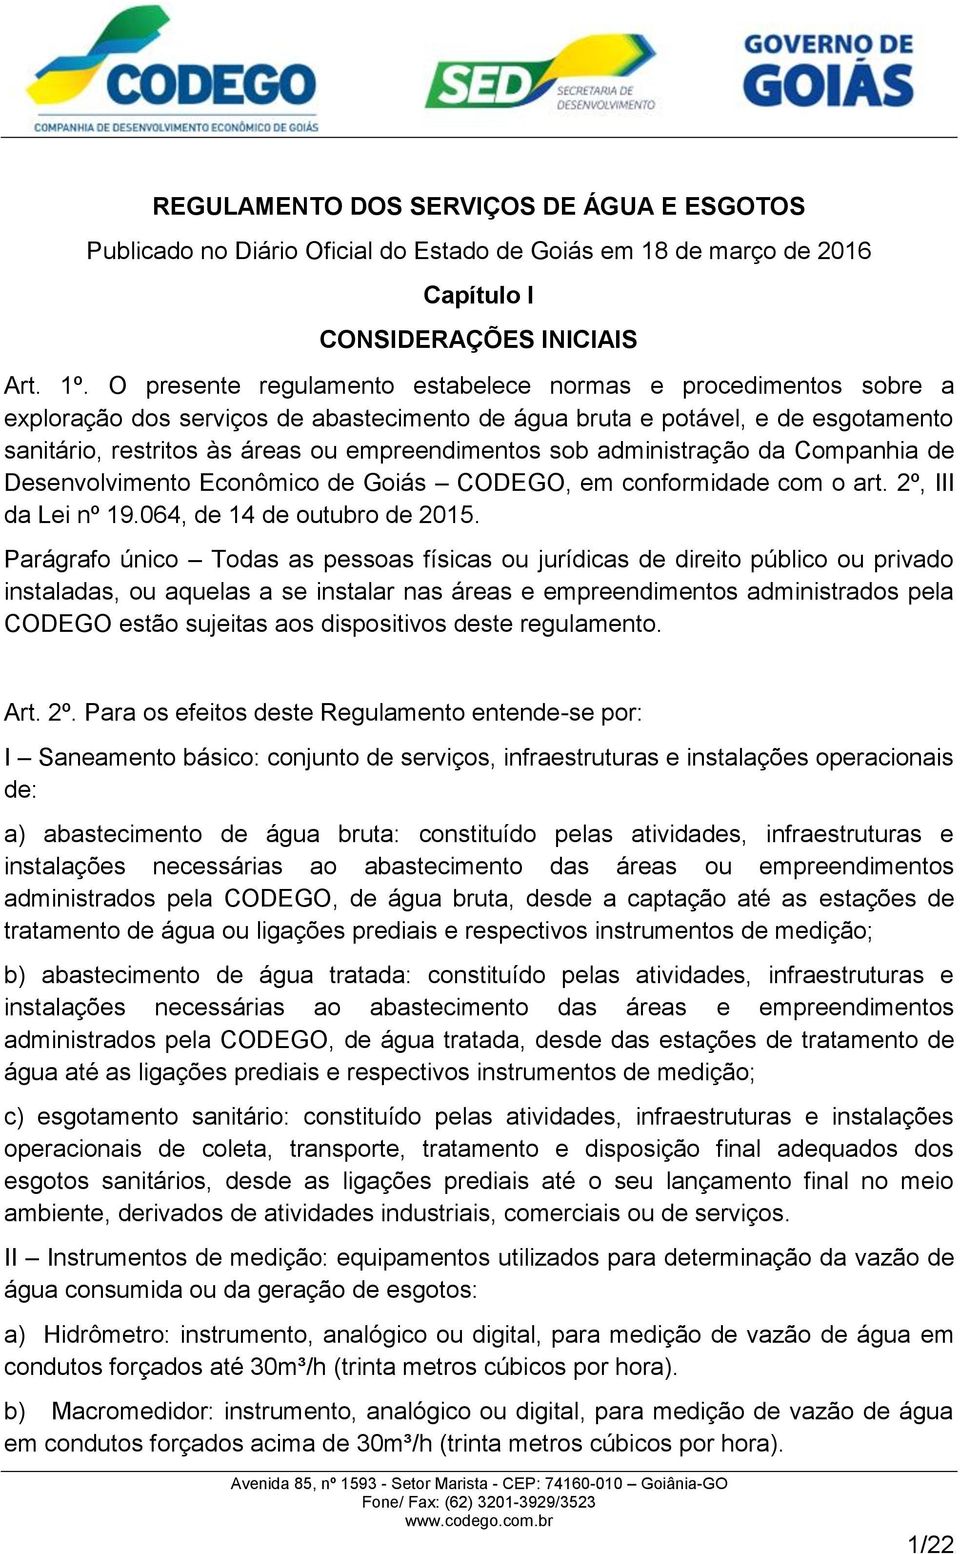 sob administração da Companhia de Desenvolvimento Econômico de Goiás CODEGO, em conformidade com o art. 2º, III da Lei nº 19.064, de 14 de outubro de 2015.